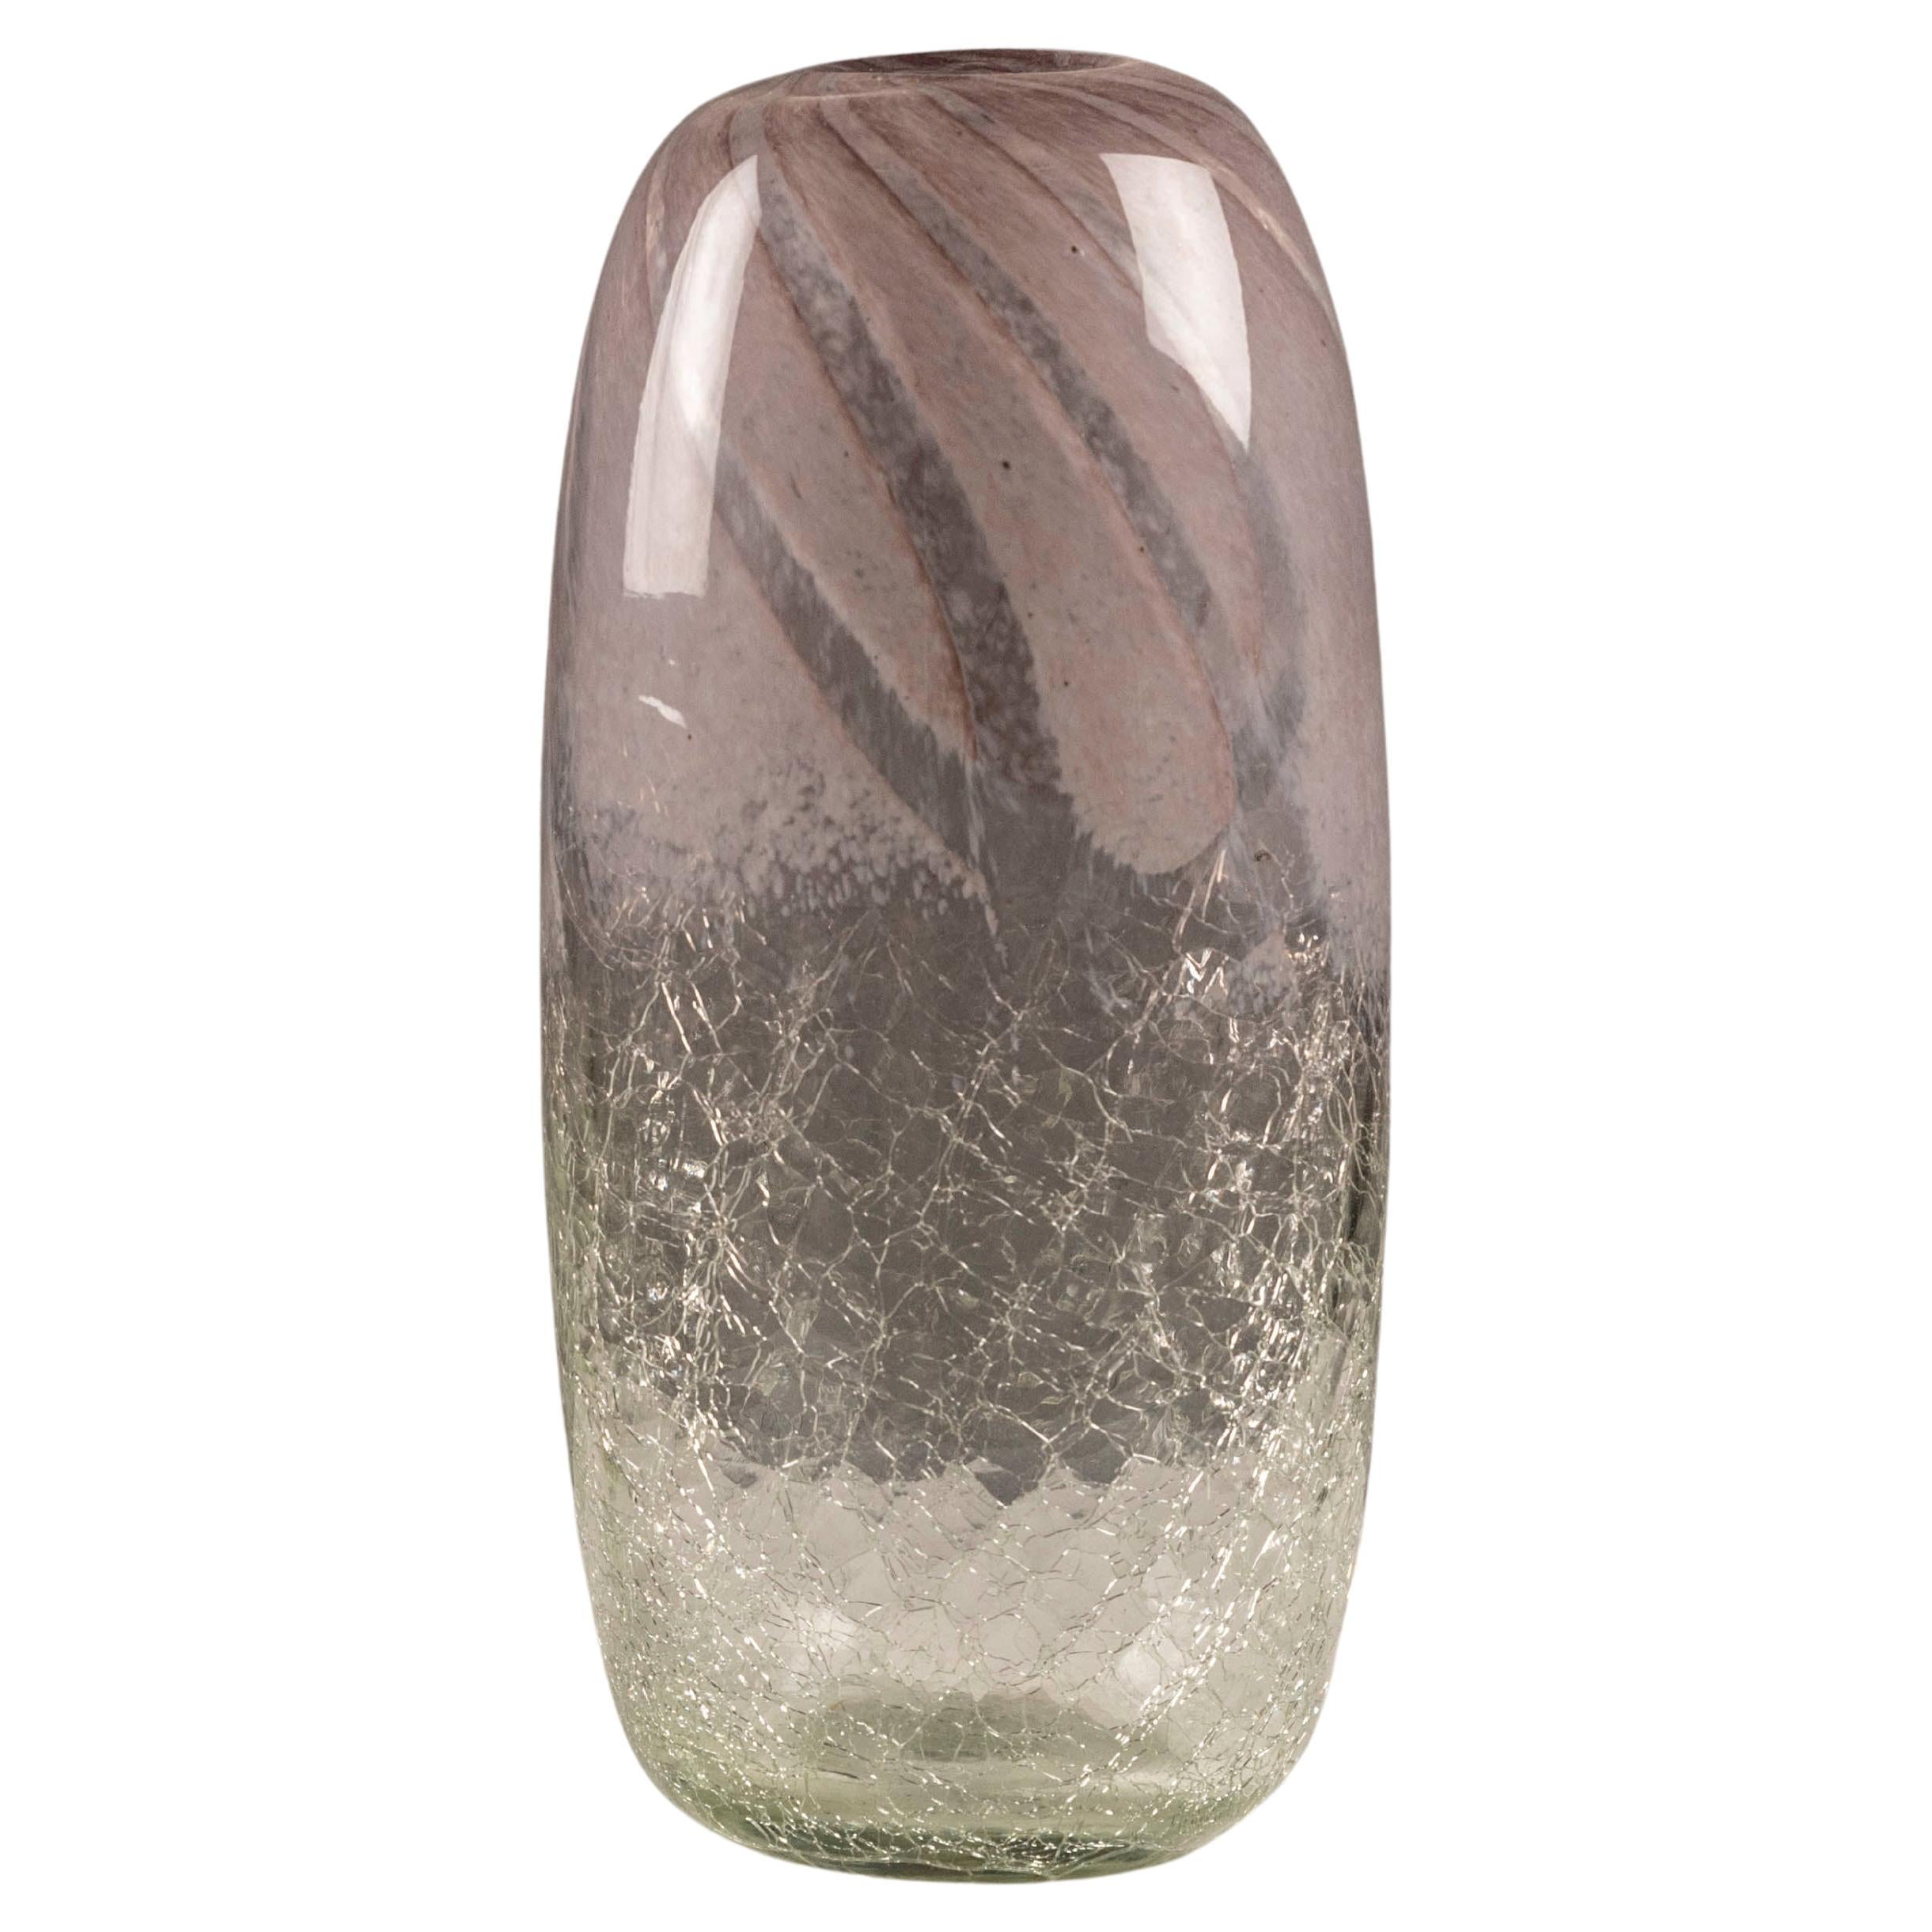 Mid-century scandinavian Craquele glass vase